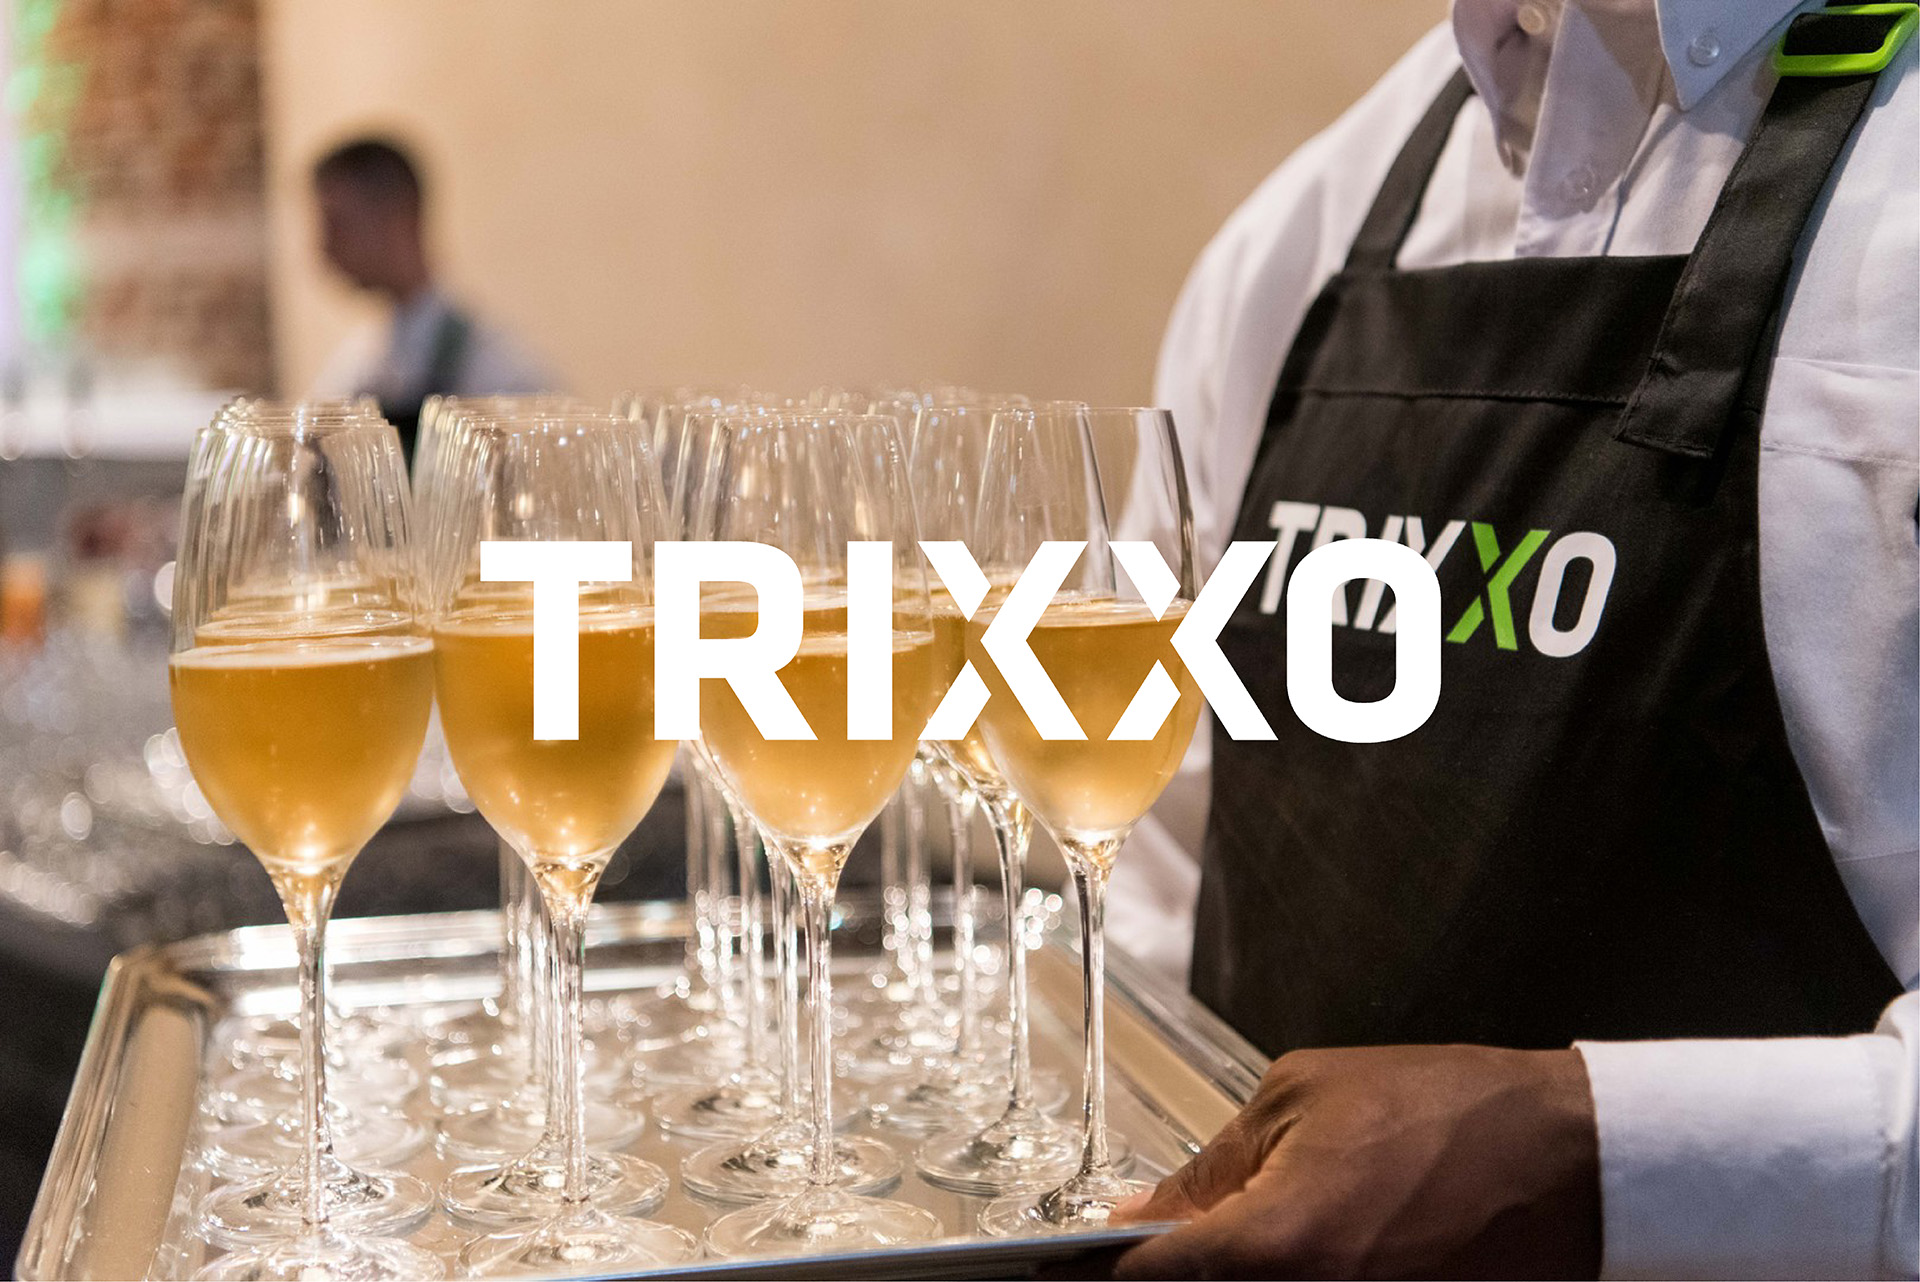 Flexibel uitzendkrachten plannen voor Trixxo Jobs met Crewfixx case study